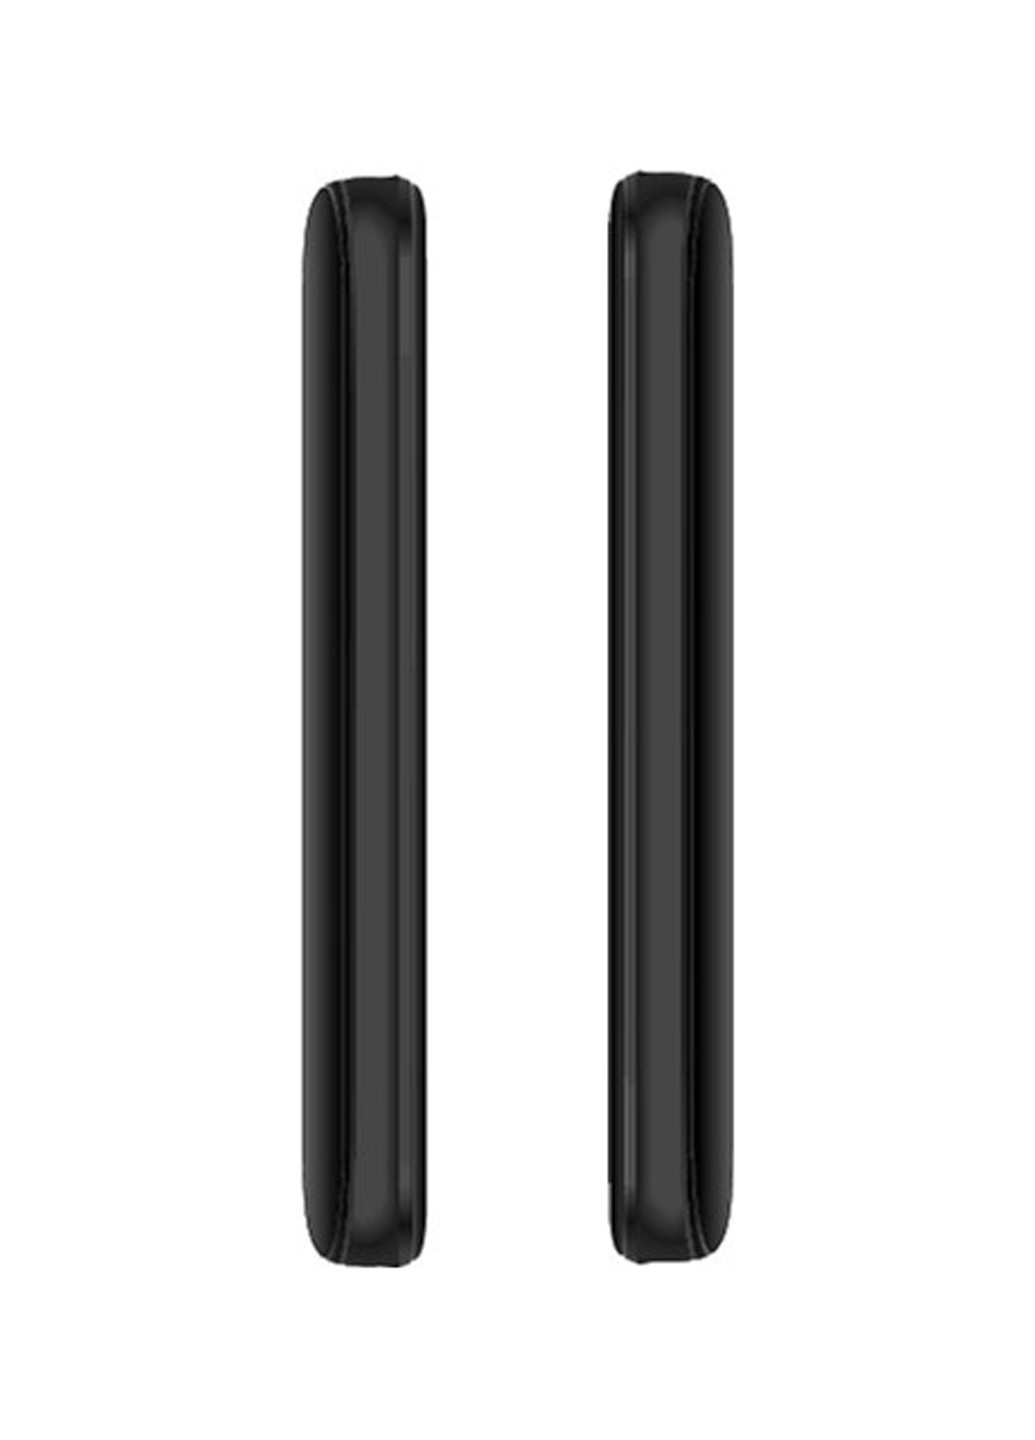 Мобільний телефон Ergo f186 solace black (138565688)